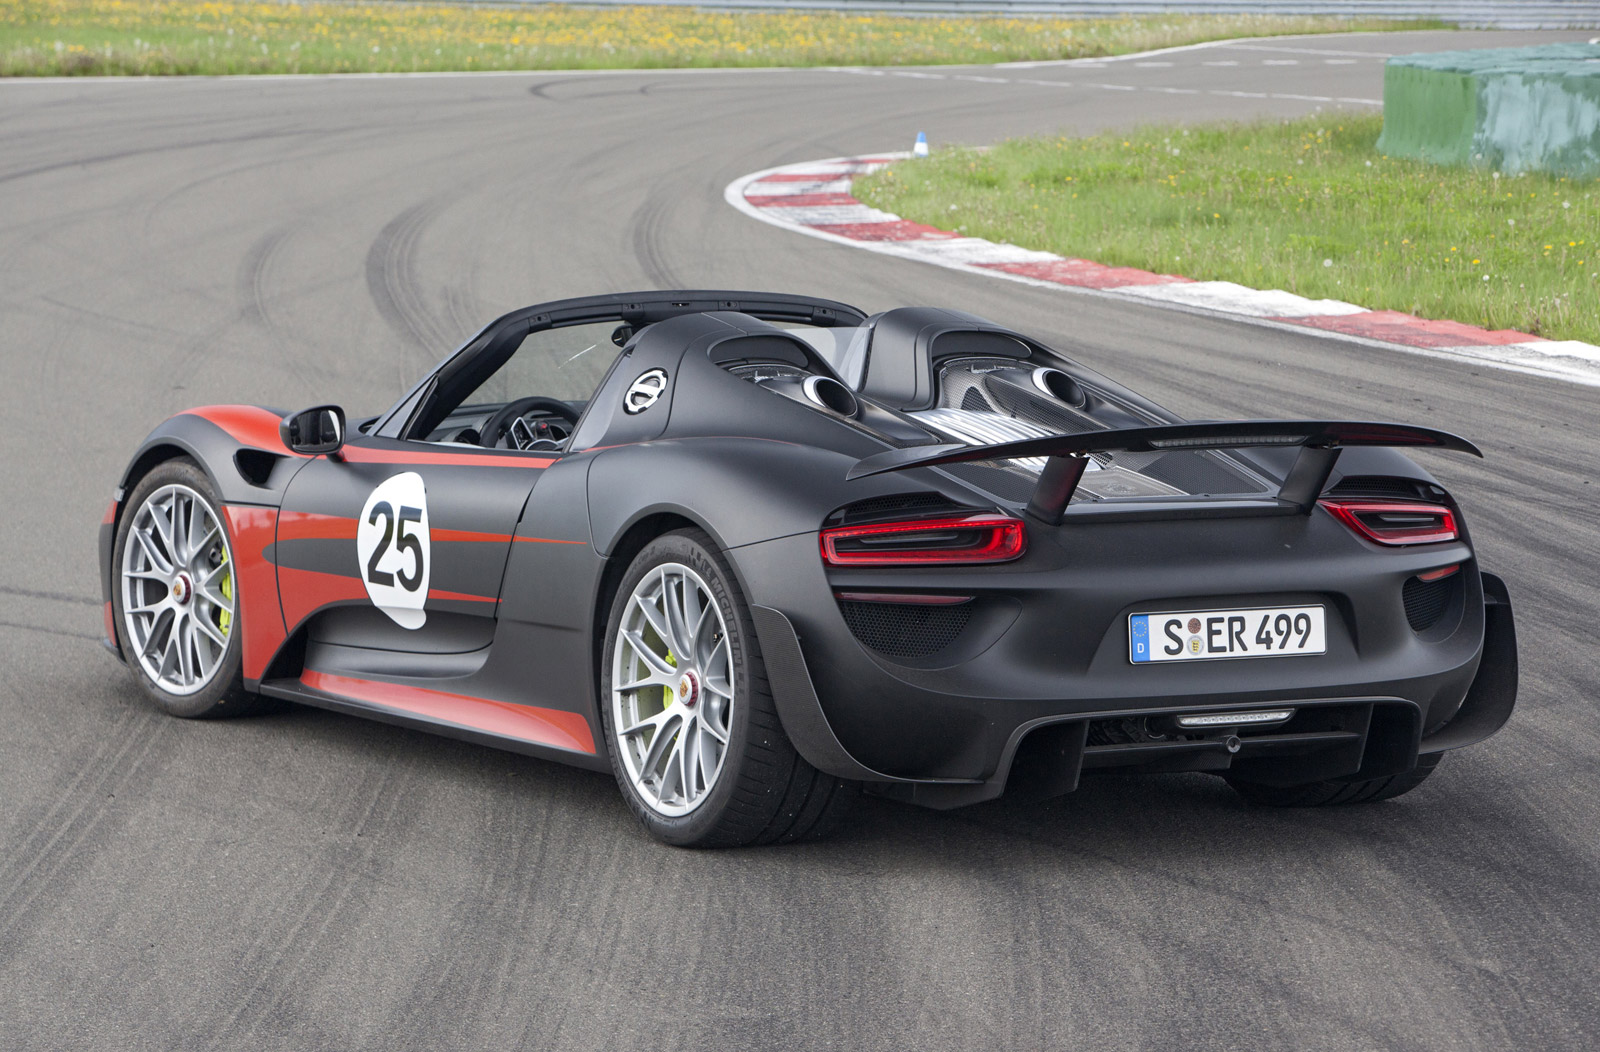 Porsche Announces Revised Specs For 918 Spyder